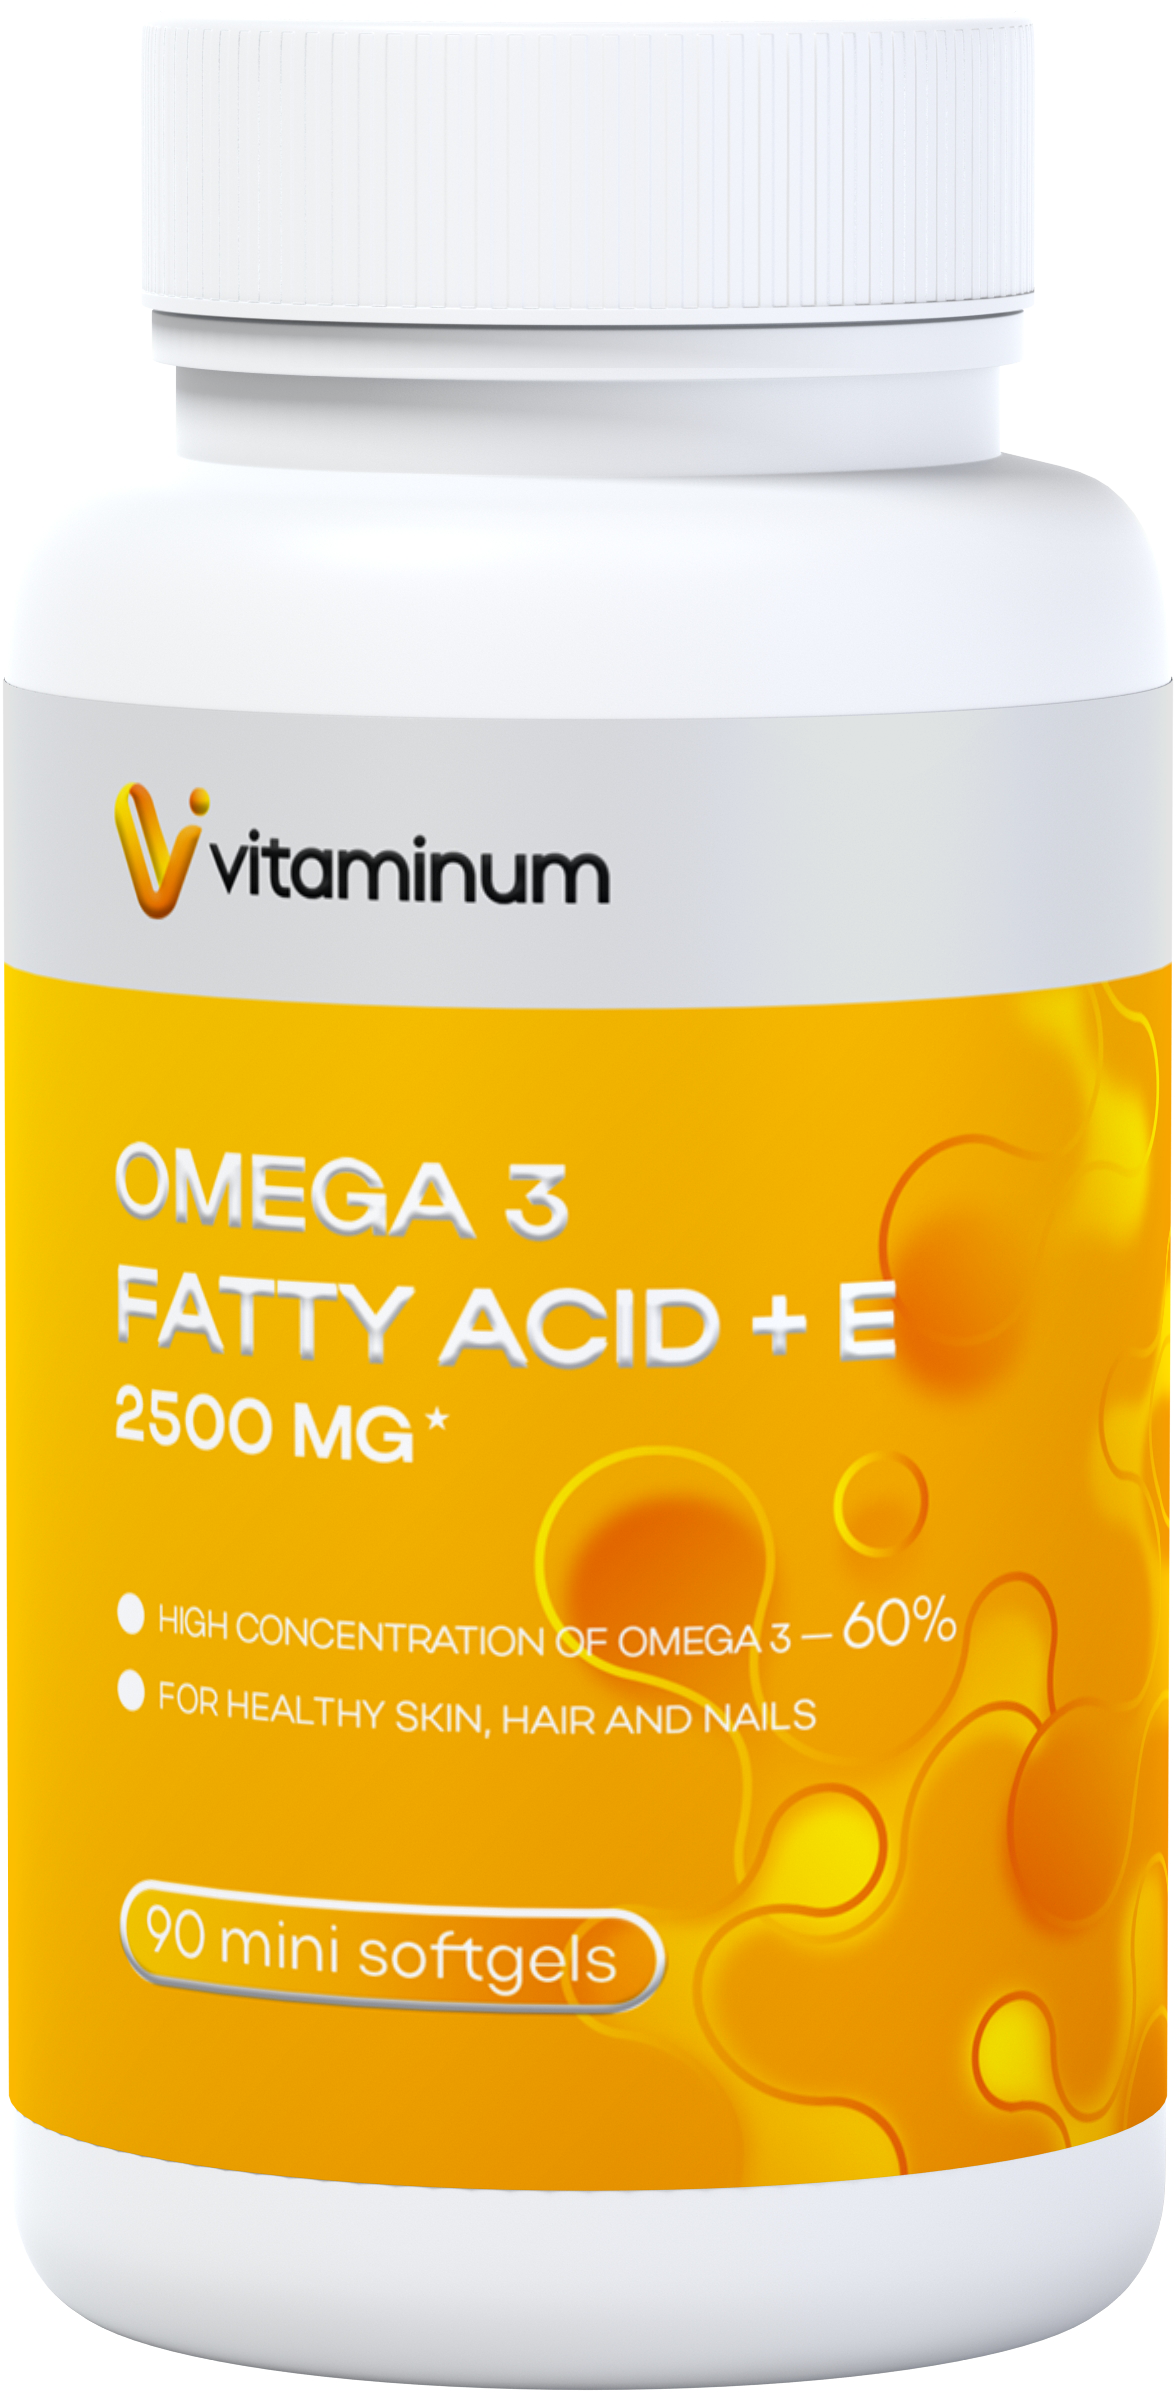  Vitaminum ОМЕГА 3 60% + витамин Е (2500 MG*) 90 капсул 700 мг   в Ангарске